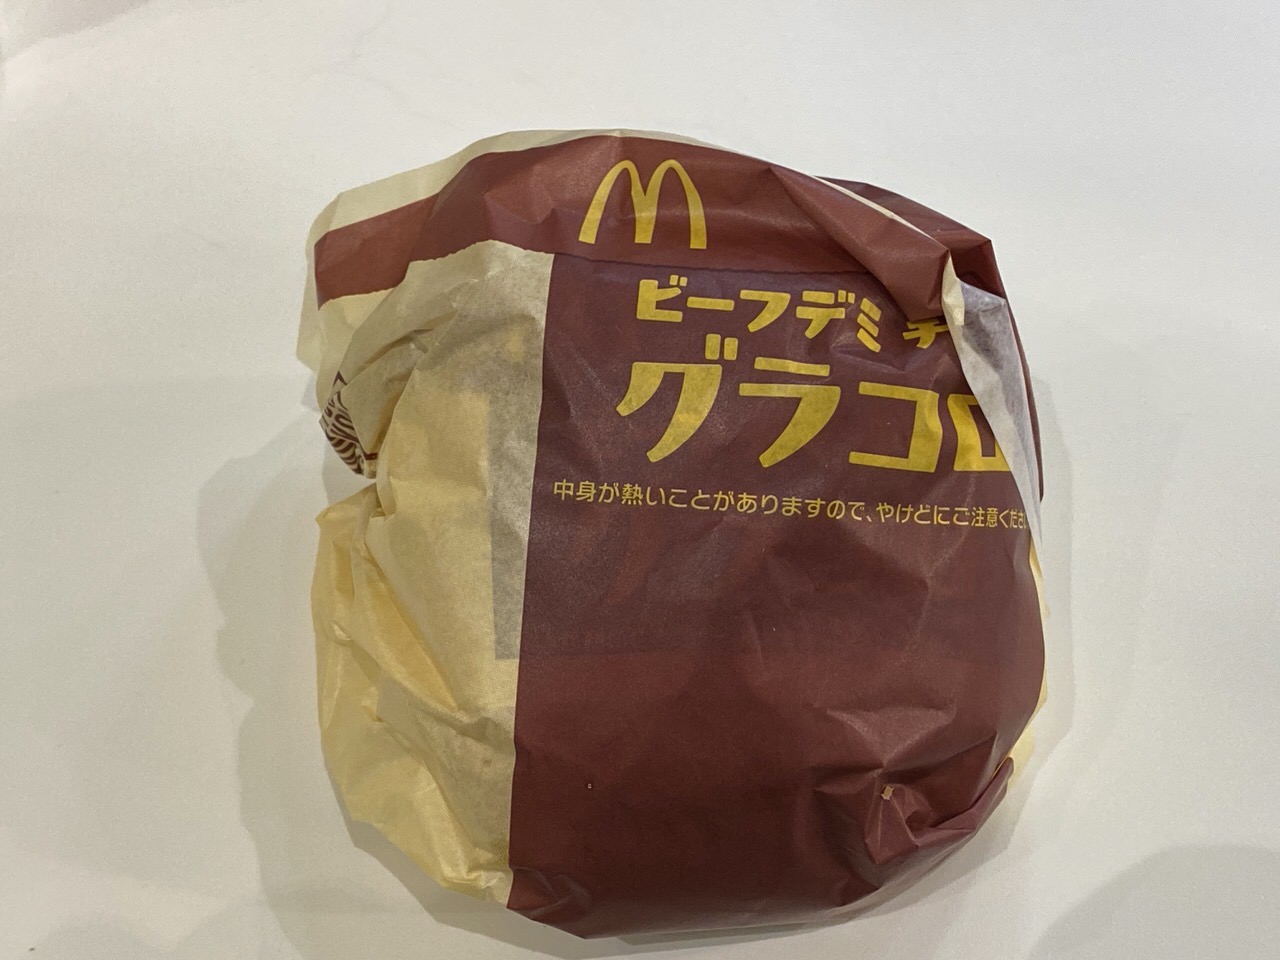 【マクドナルド】「ビーフデミ チーズグラコロ」2